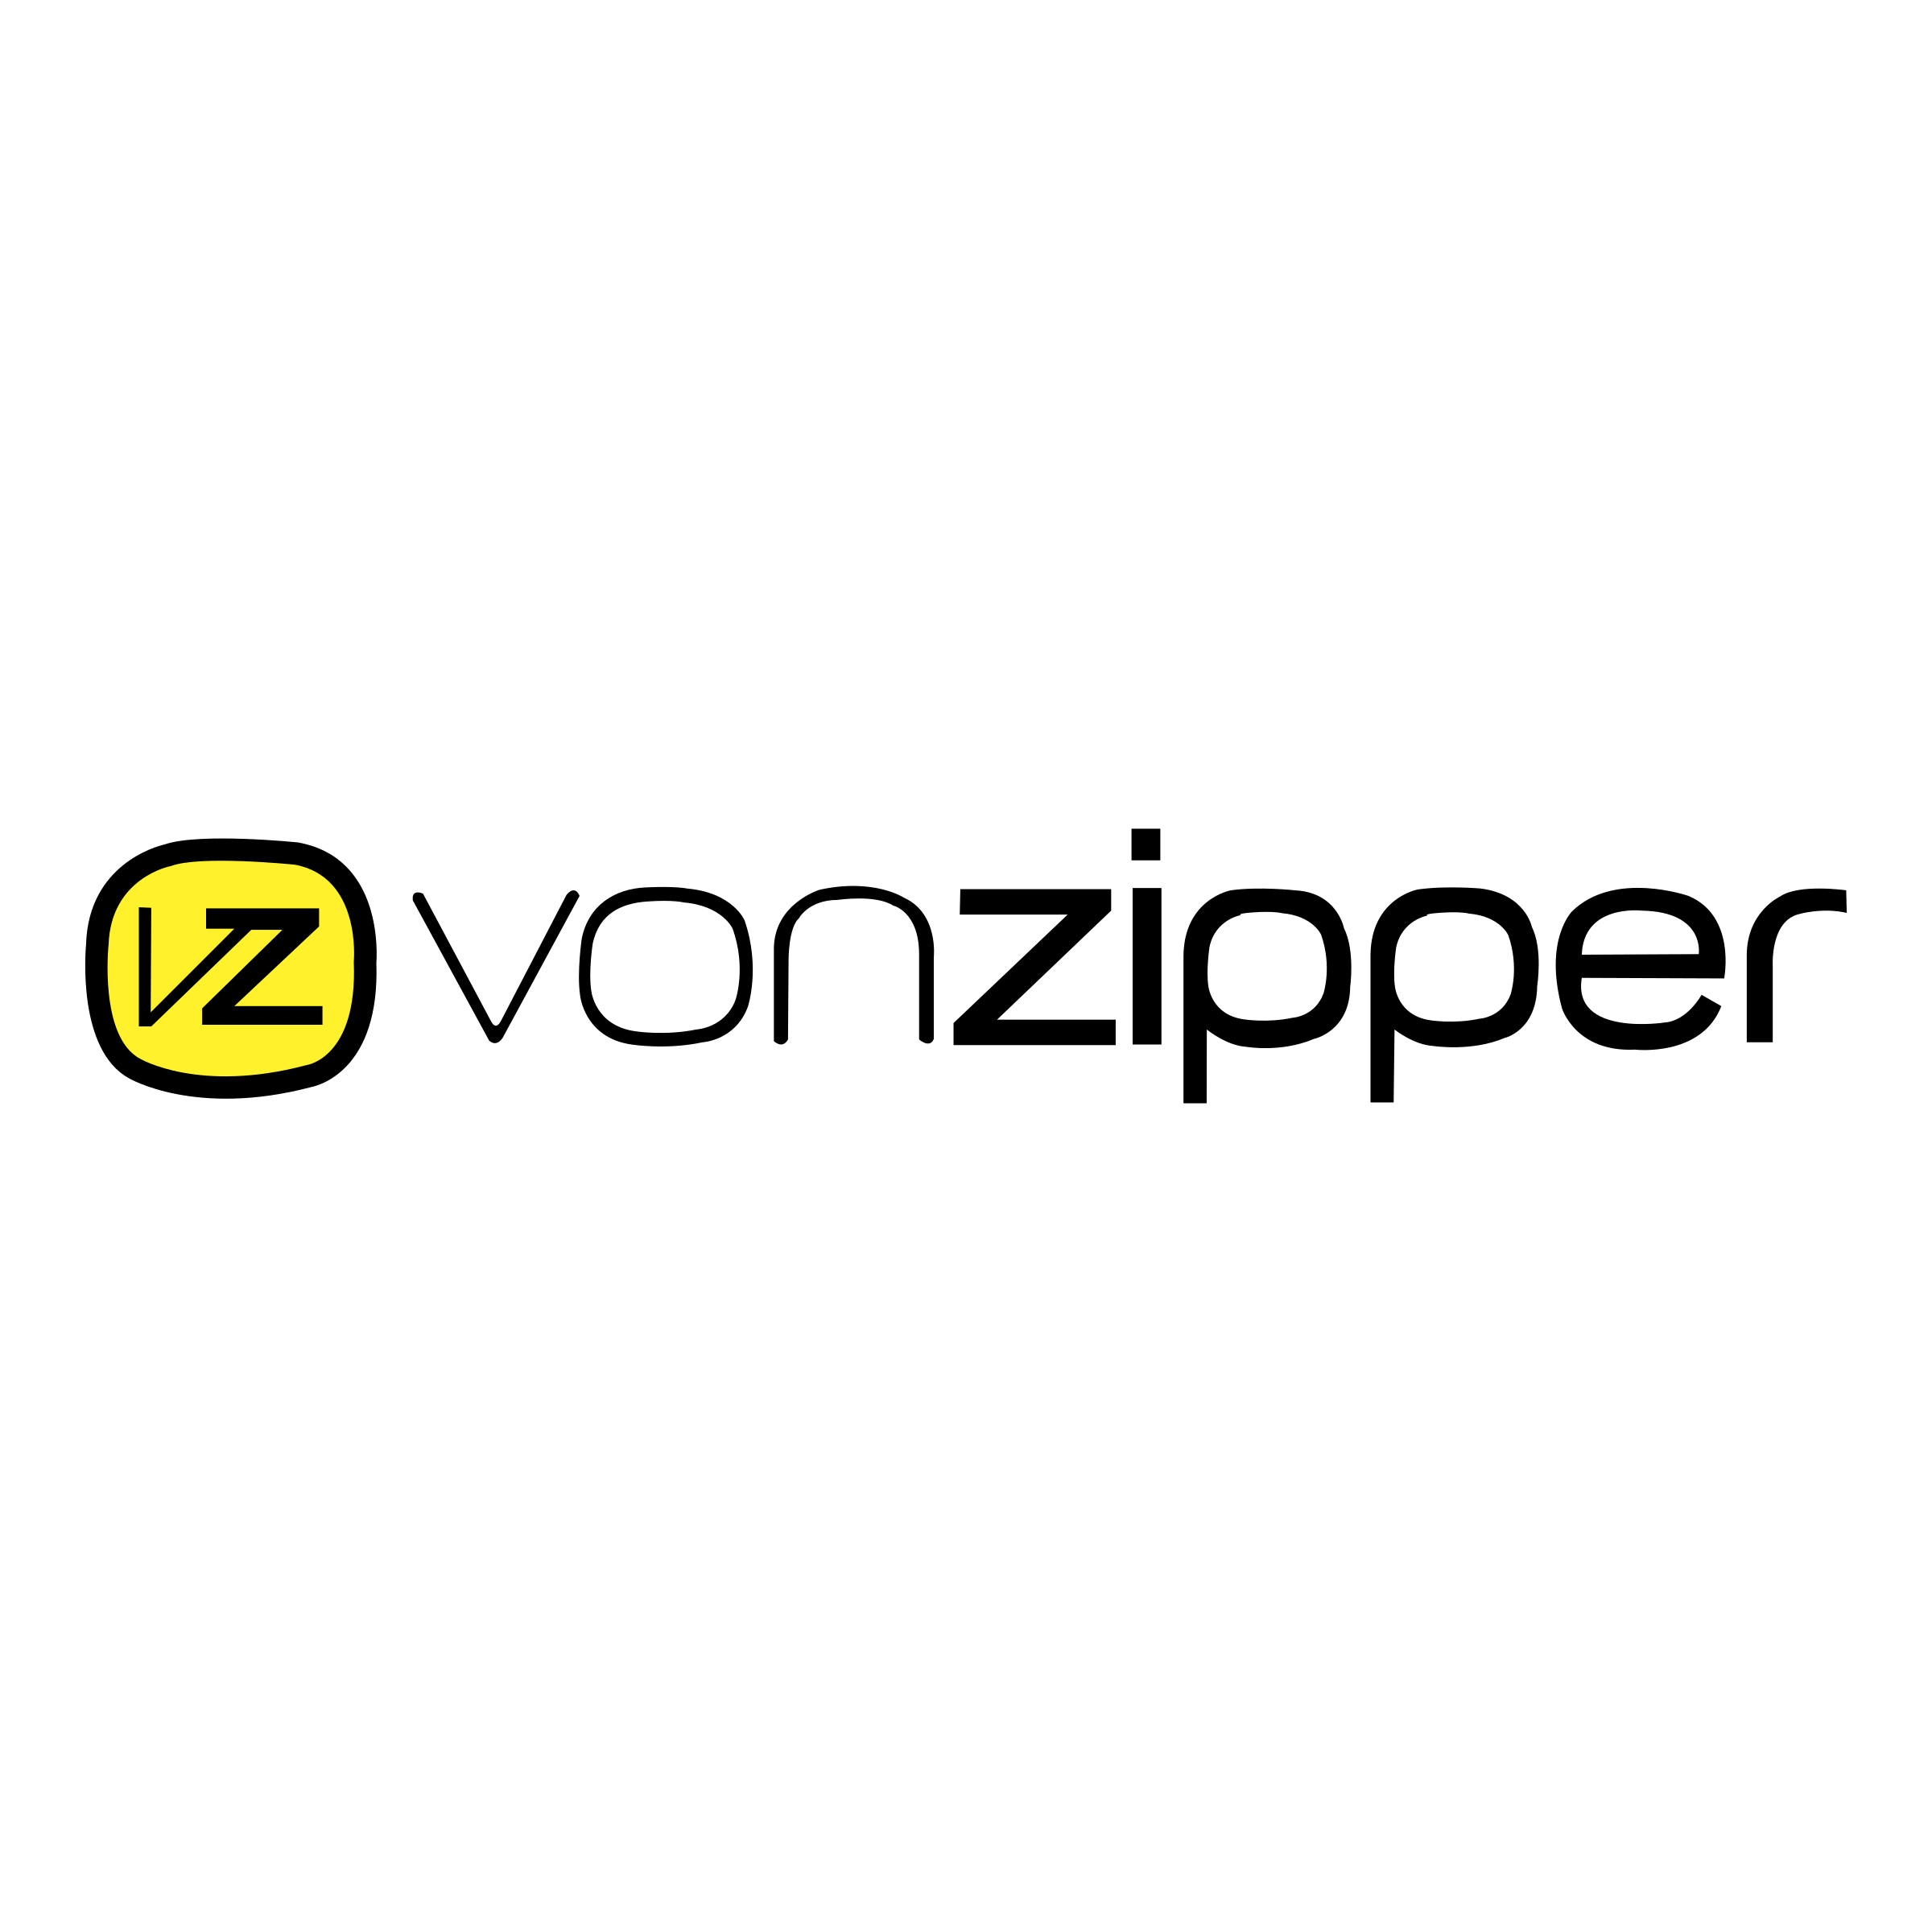 von-zipper-logo-png-transparent.png